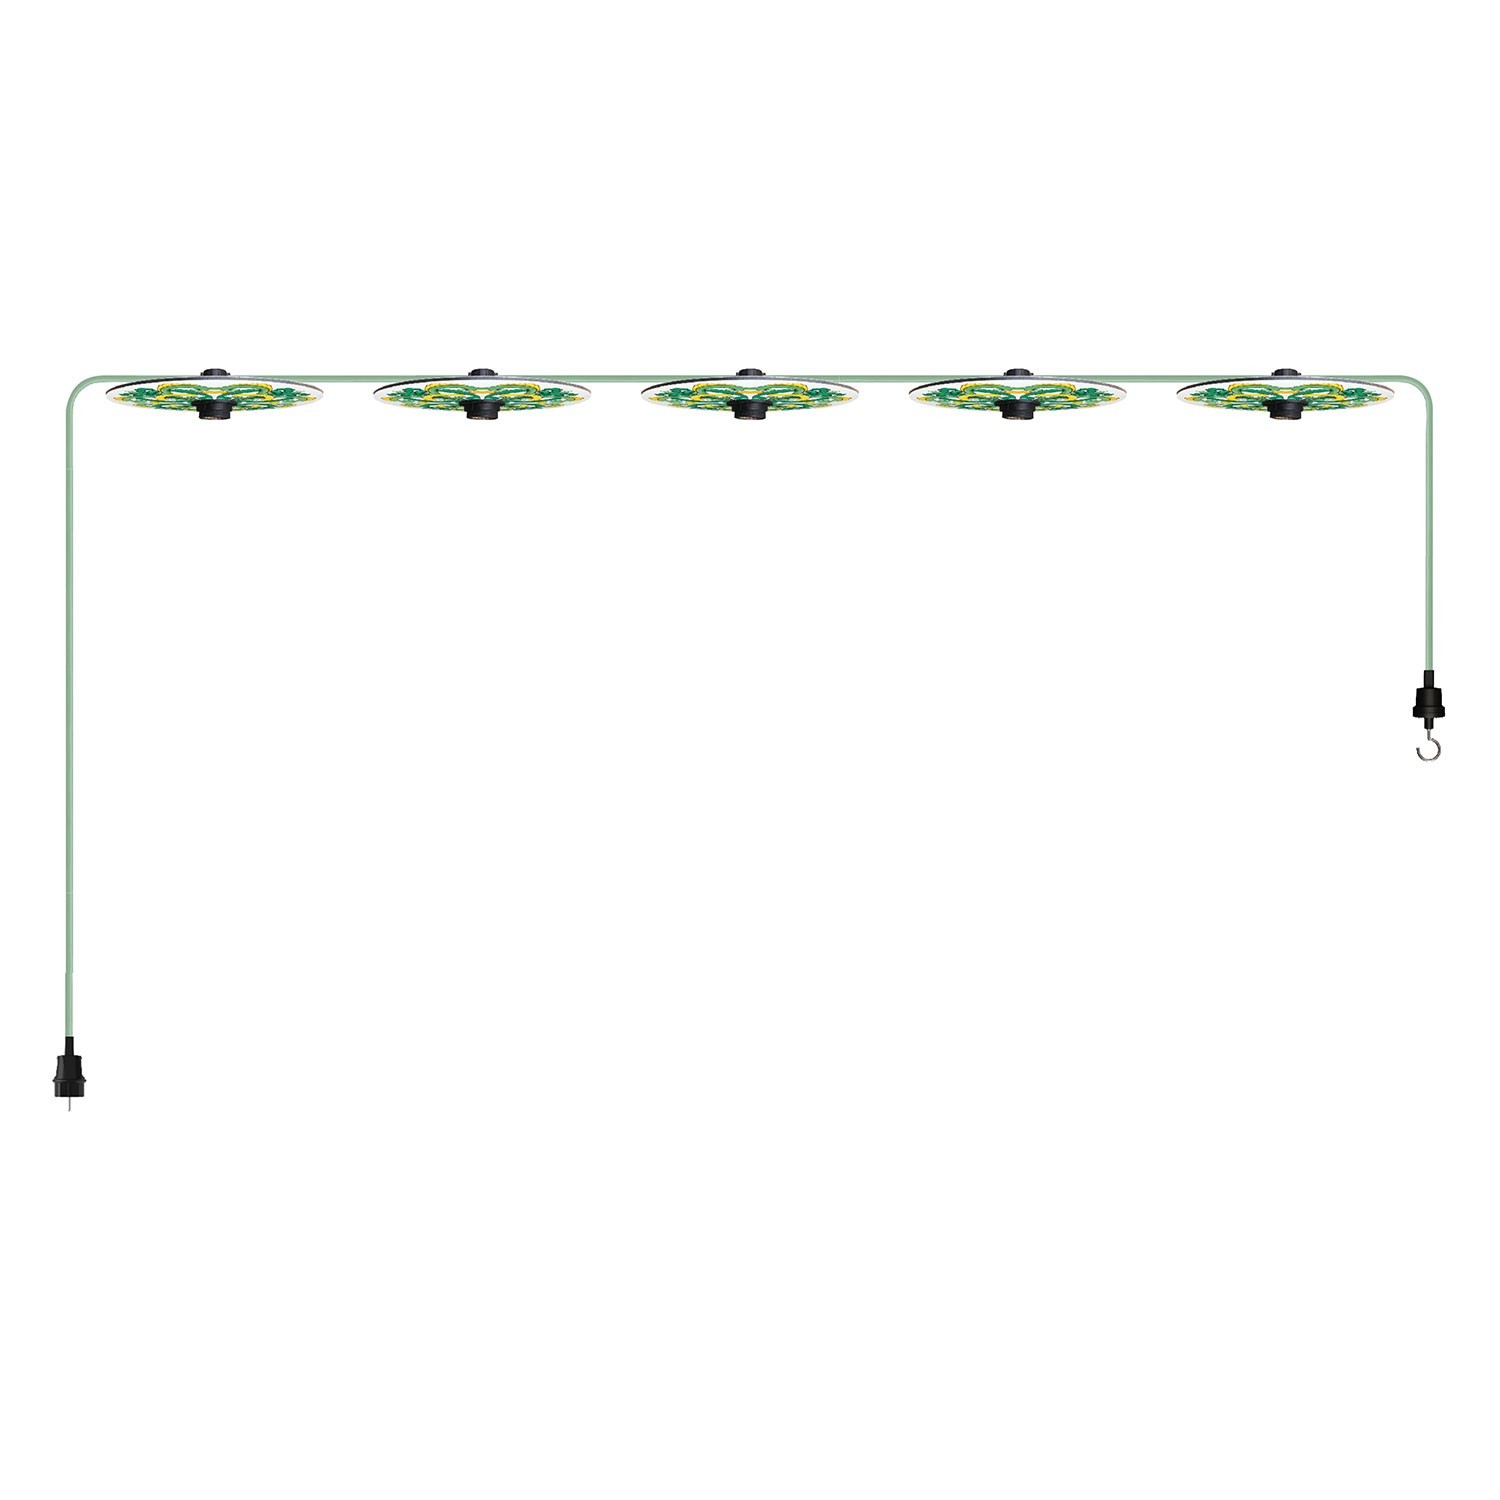 Lumet Lichterkettensystem 'Maiolica', 7,5 m lang, mit Textilkabel, 5 Fassungen und Lampenschirmen, Haken und schwarzem Stecker